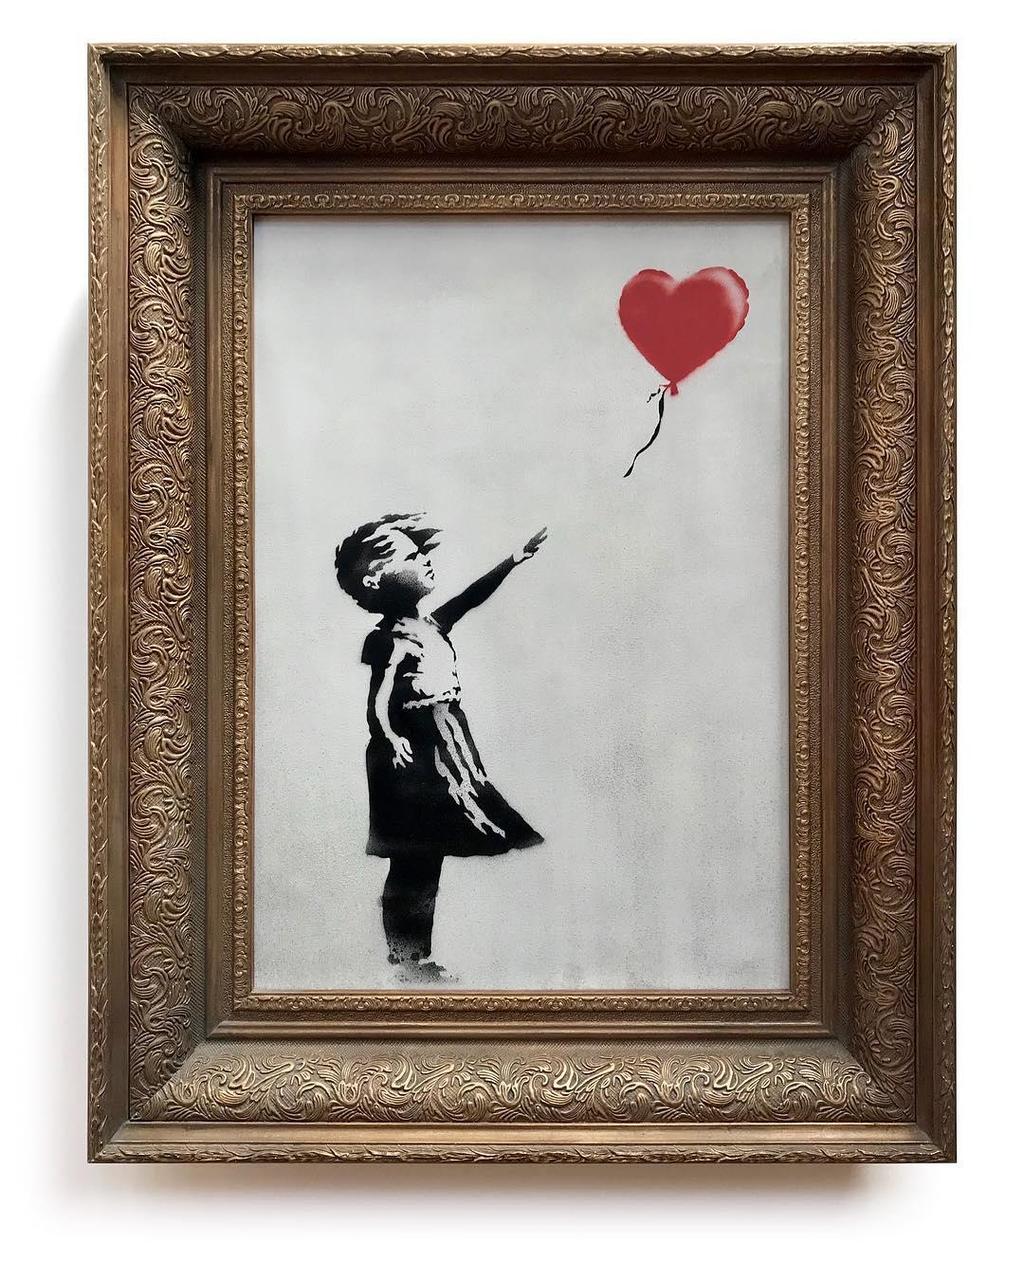 Descrizione: Raffigura una bambina con la mano tesa verso un palloncino rosso a forma di cuore, portato via dal vento.